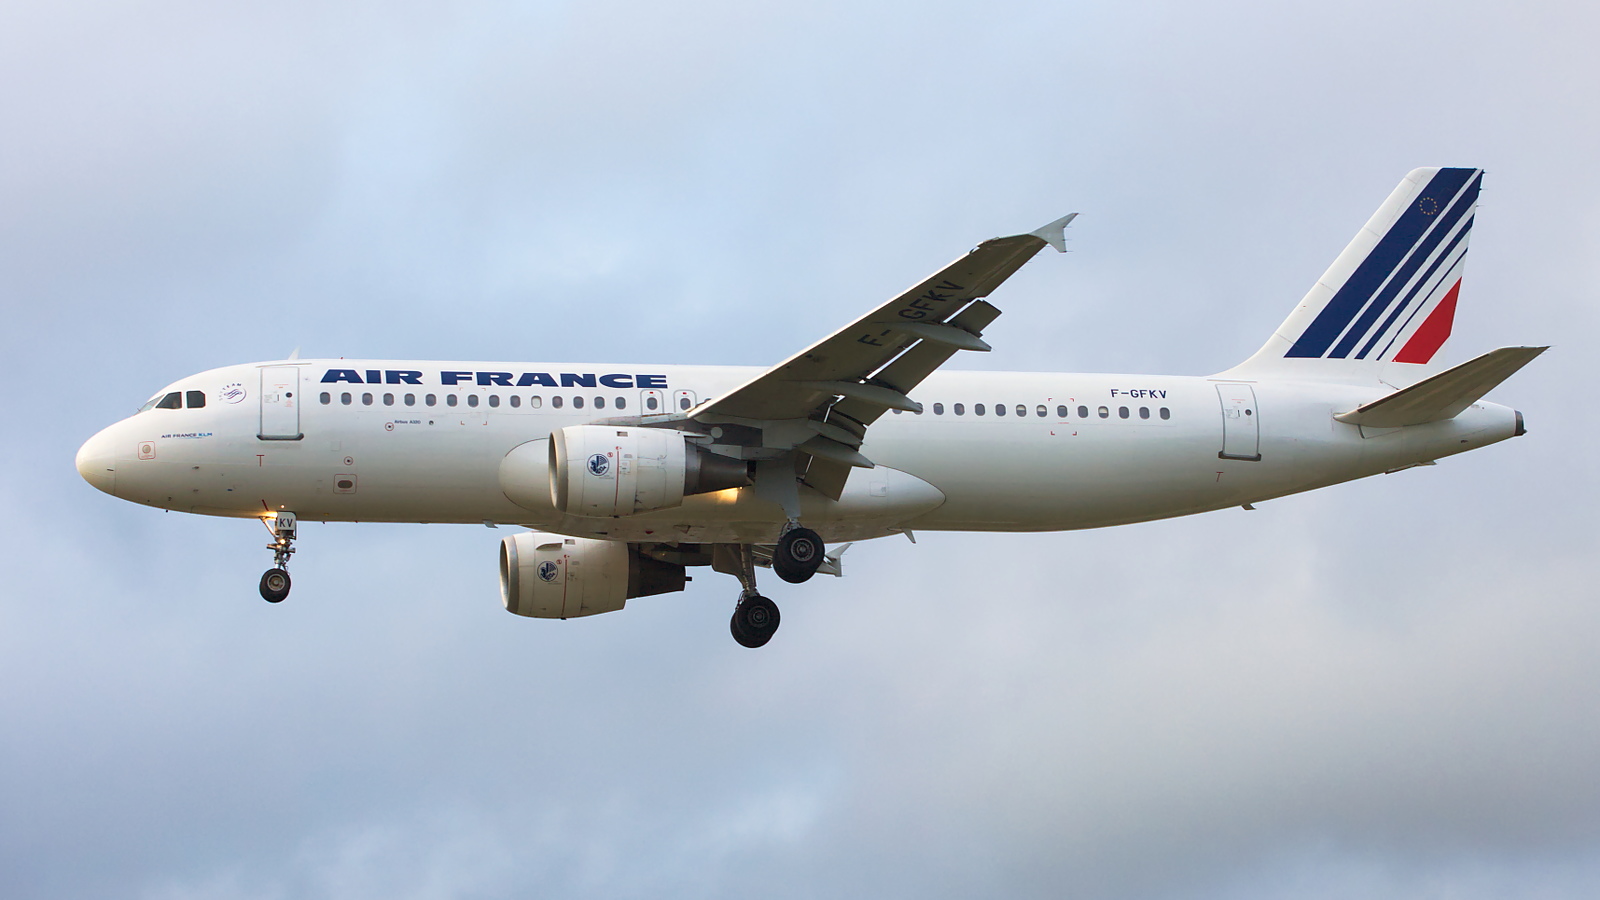 F-GFKV ✈ Air France Airbus A320-211 @ London-Heathrow